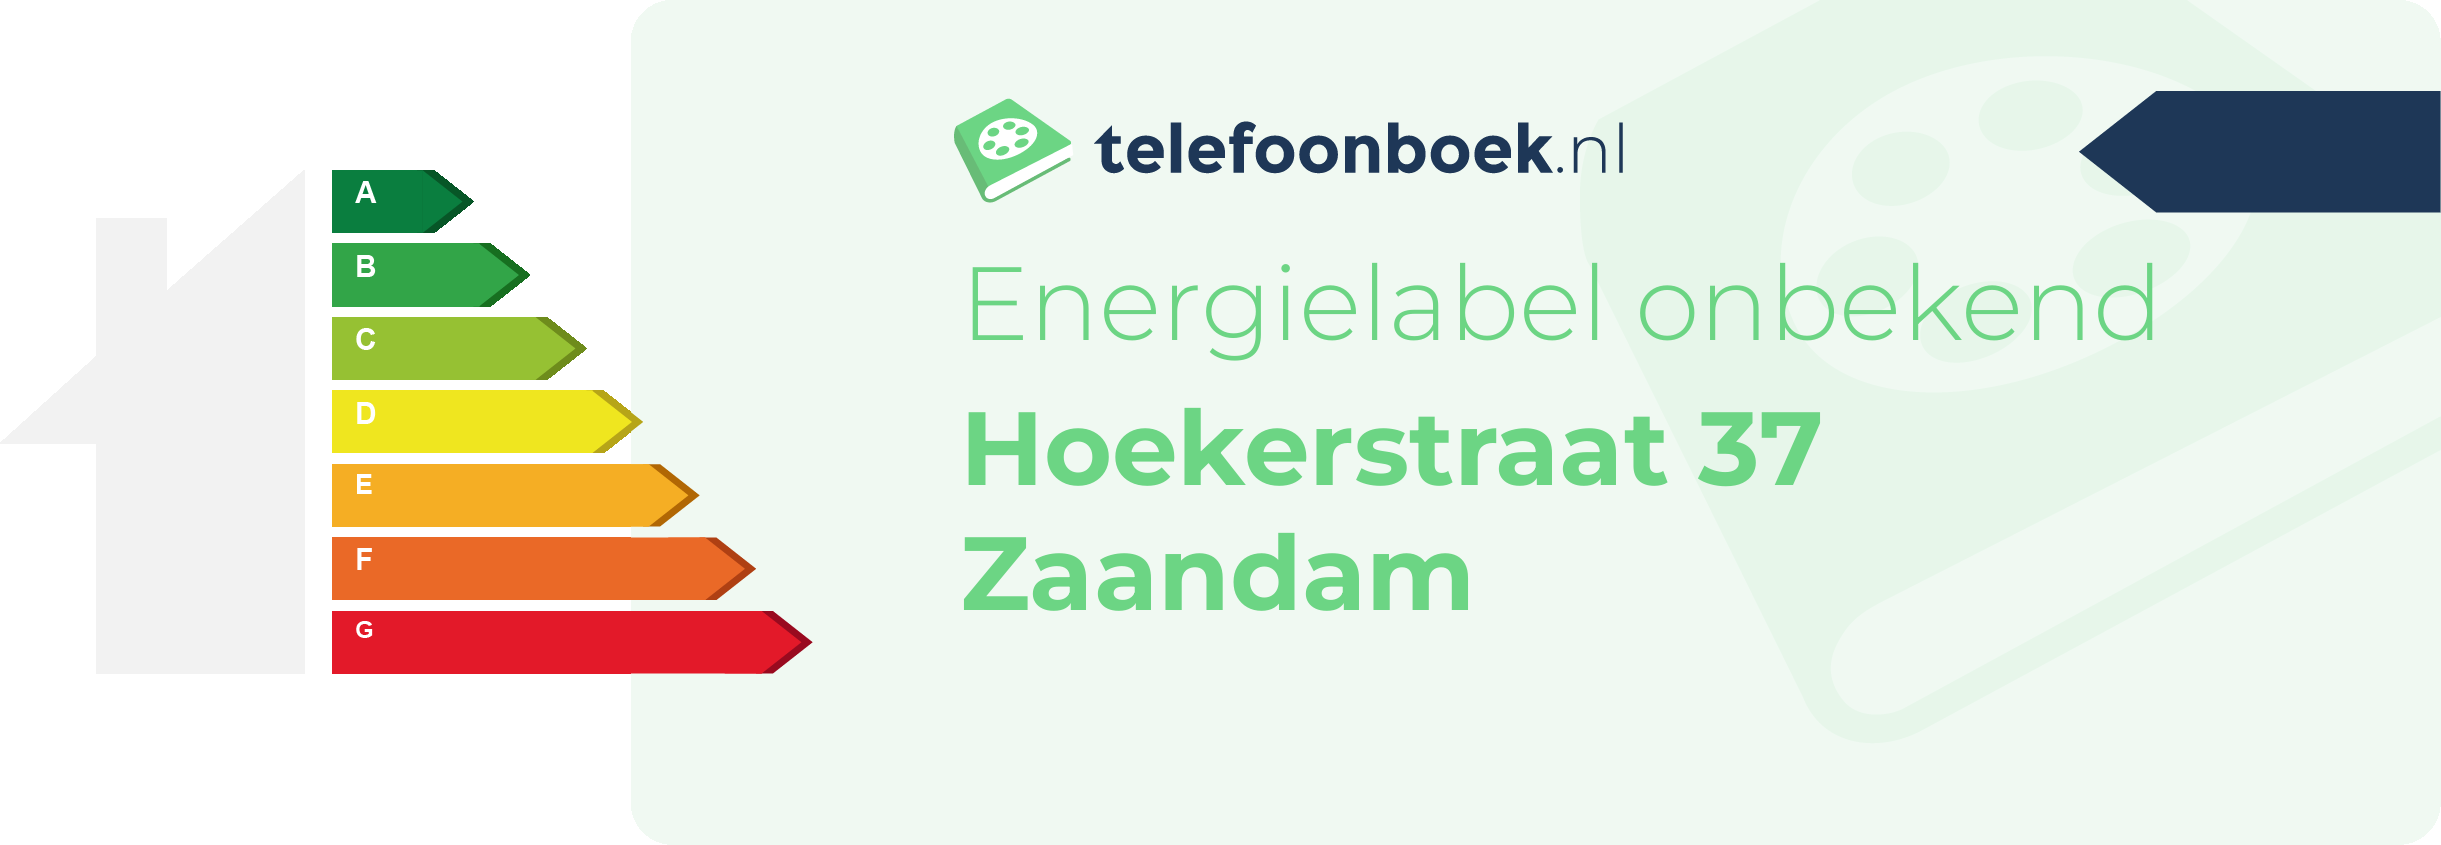 Energielabel Hoekerstraat 37 Zaandam